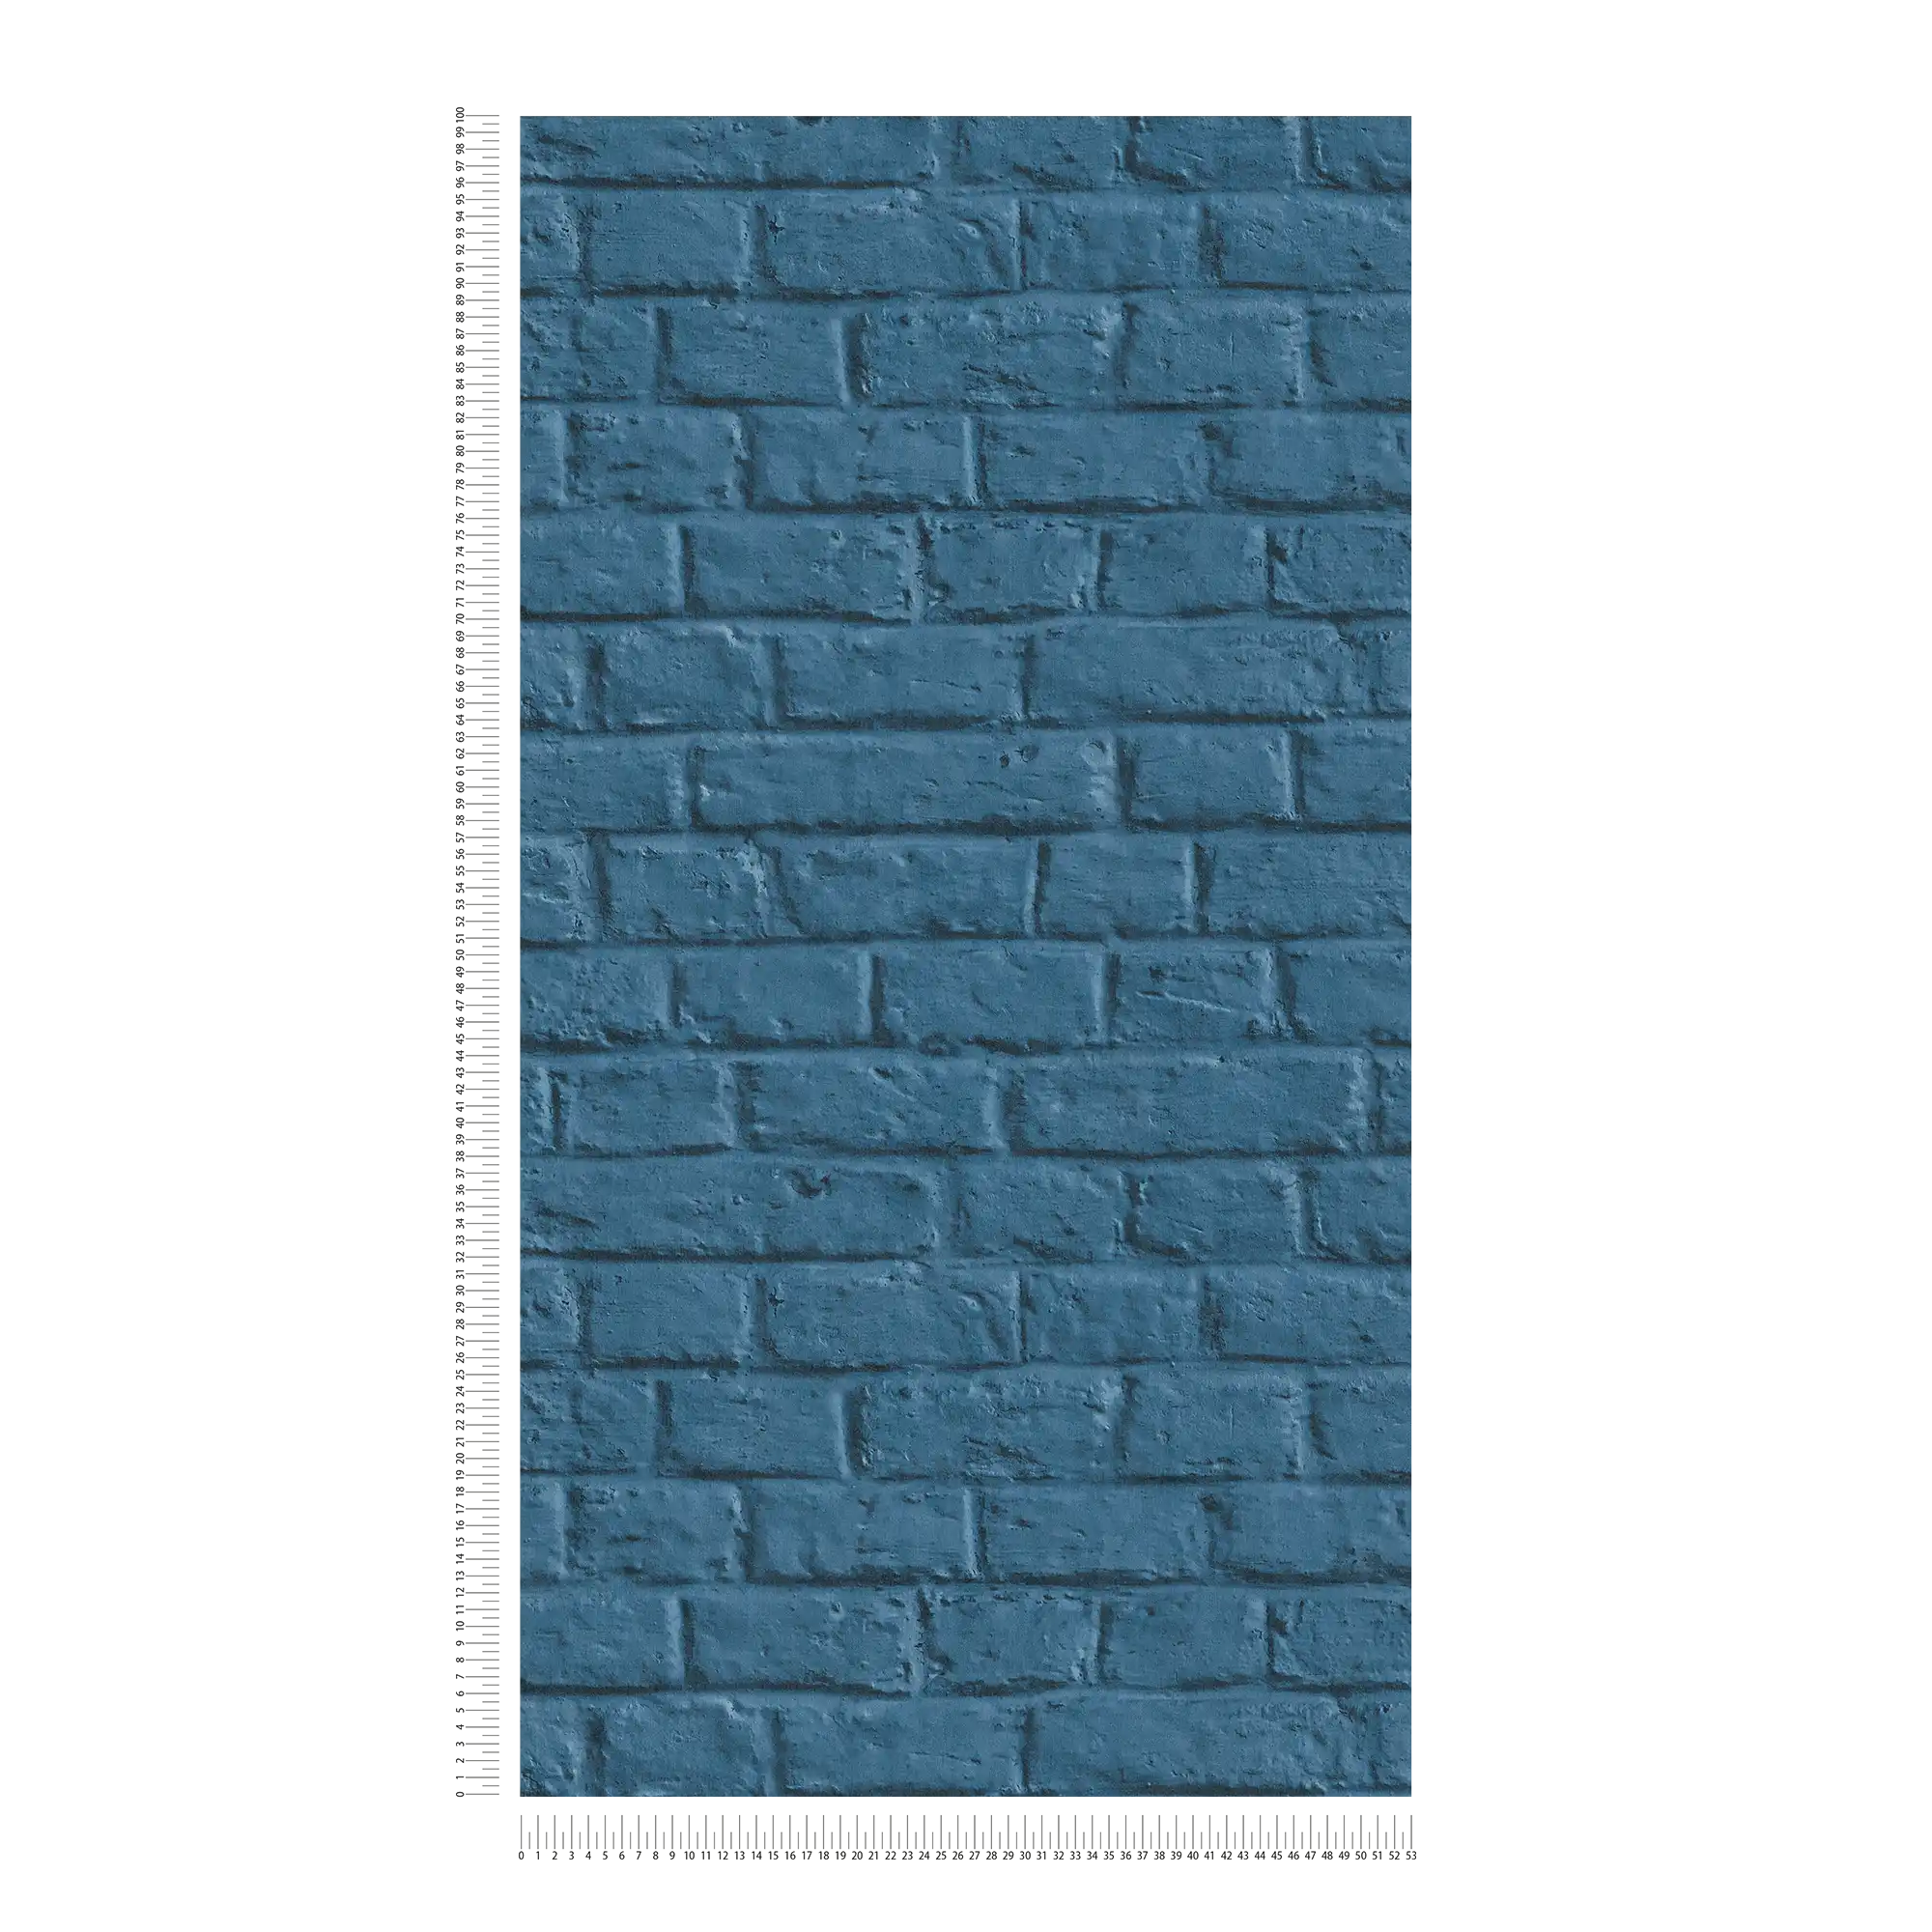             Steintapete in glatter Backsteinoptik – Blau
        